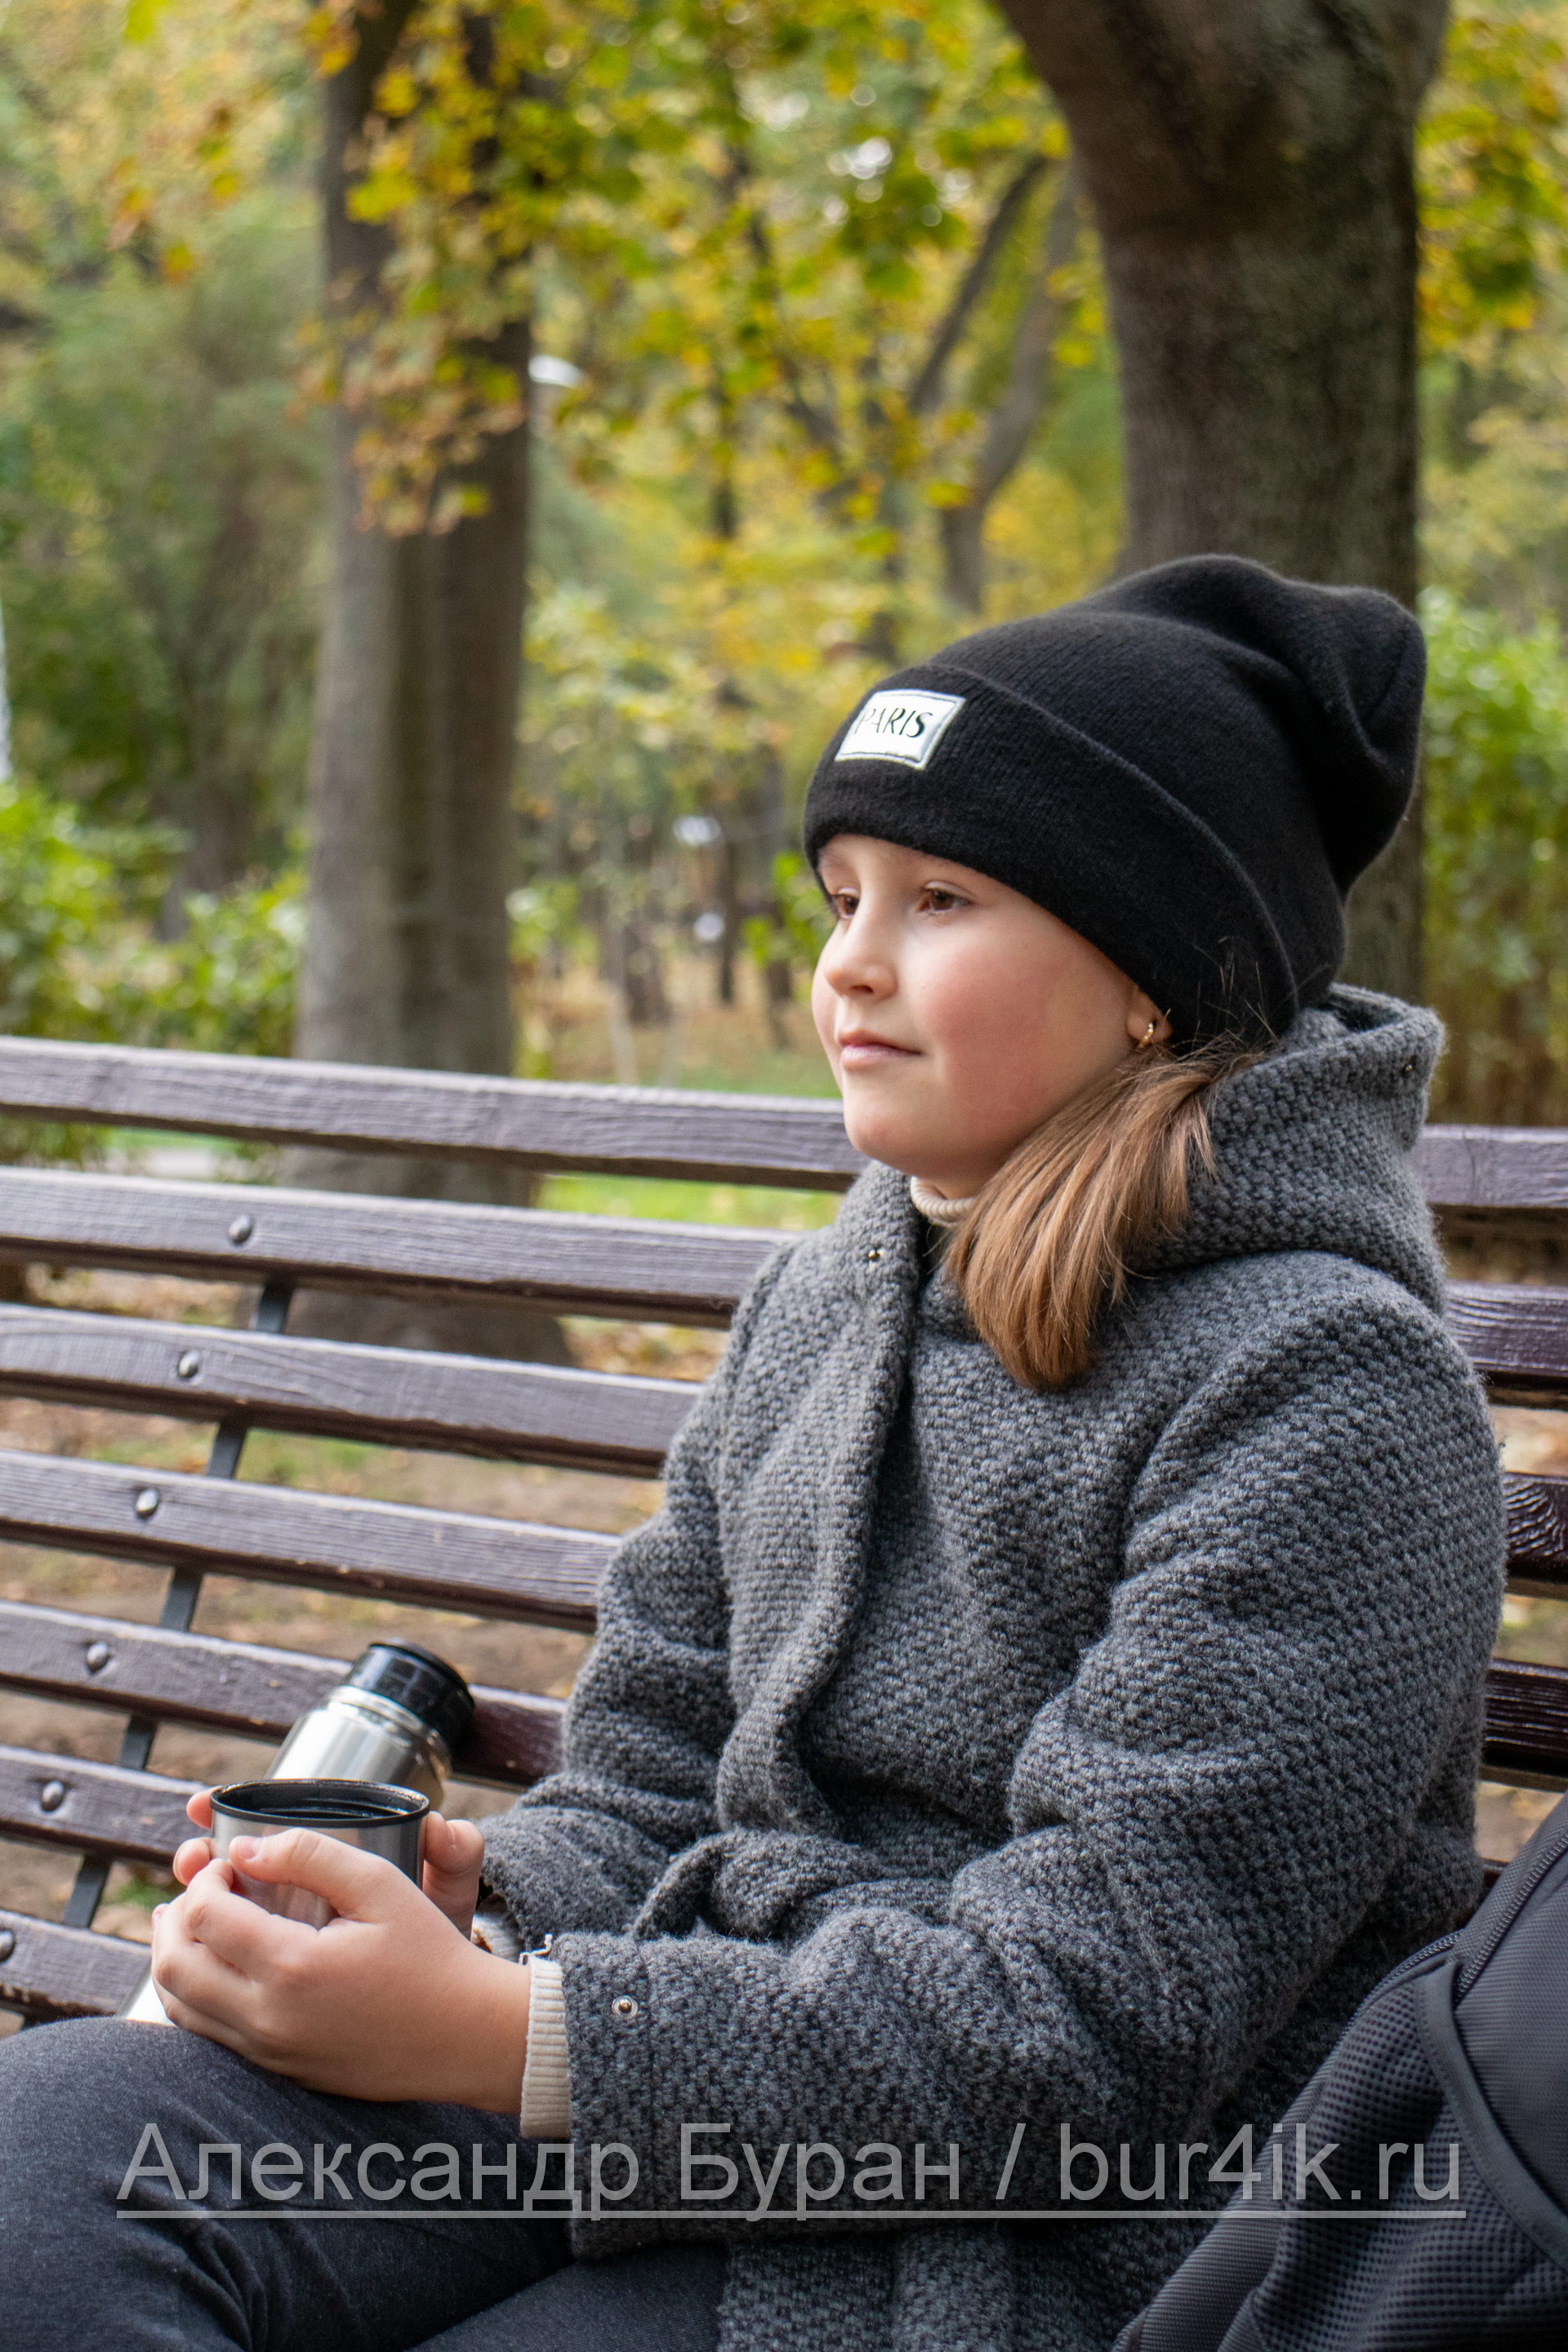 Девочка пьет теплый чай из термоса в парке осенью